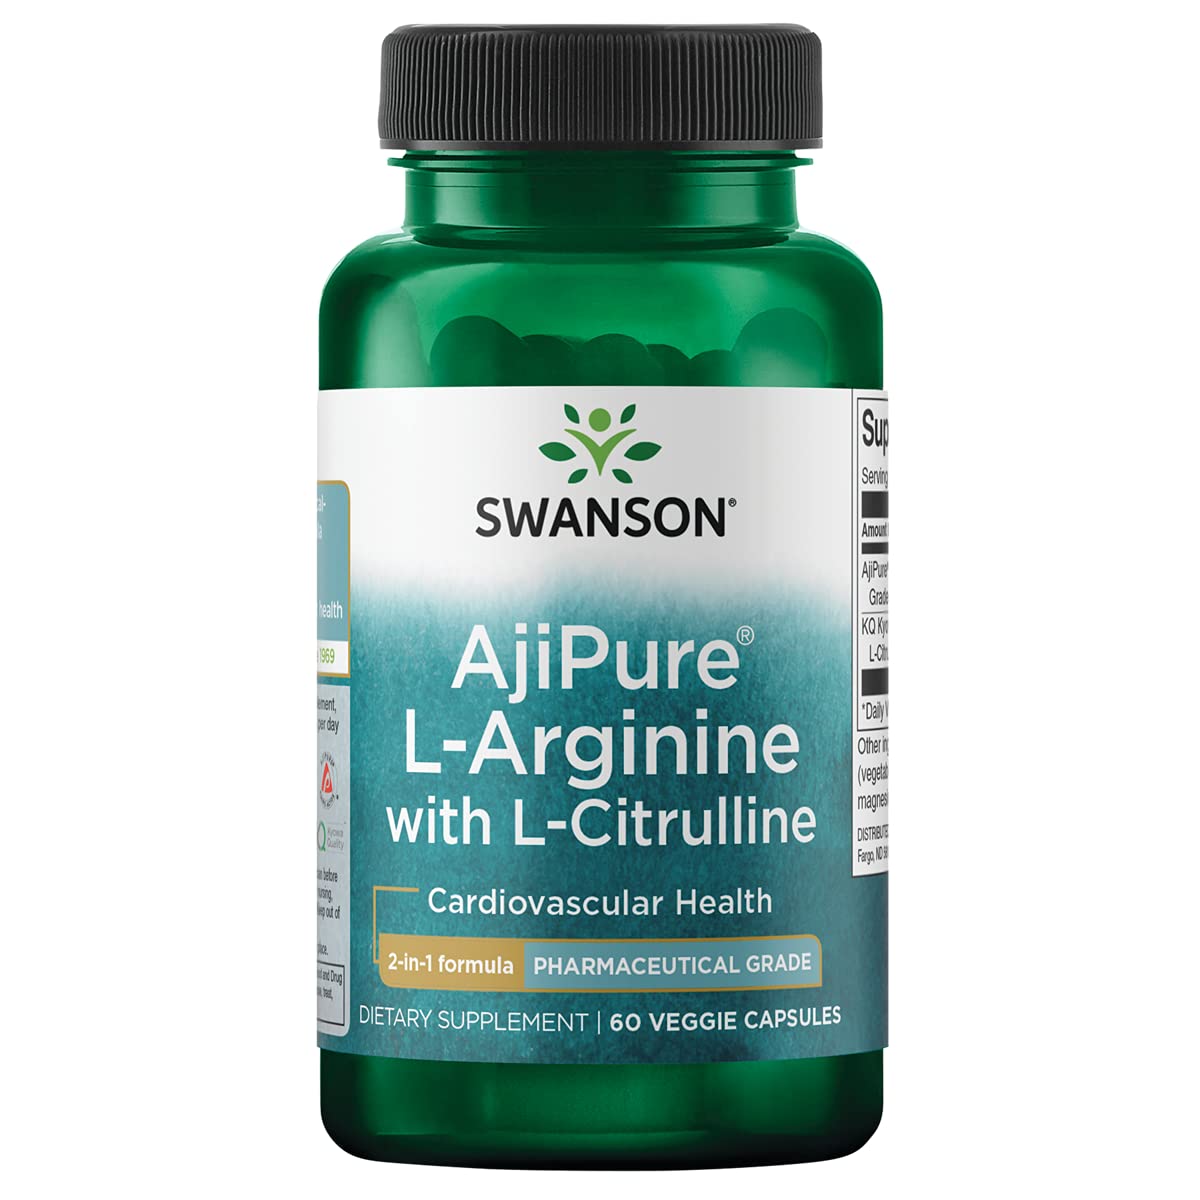 Swanson Amino Acid Ajipure L-Arginine with L-Citrulline 60 Veg Capsules